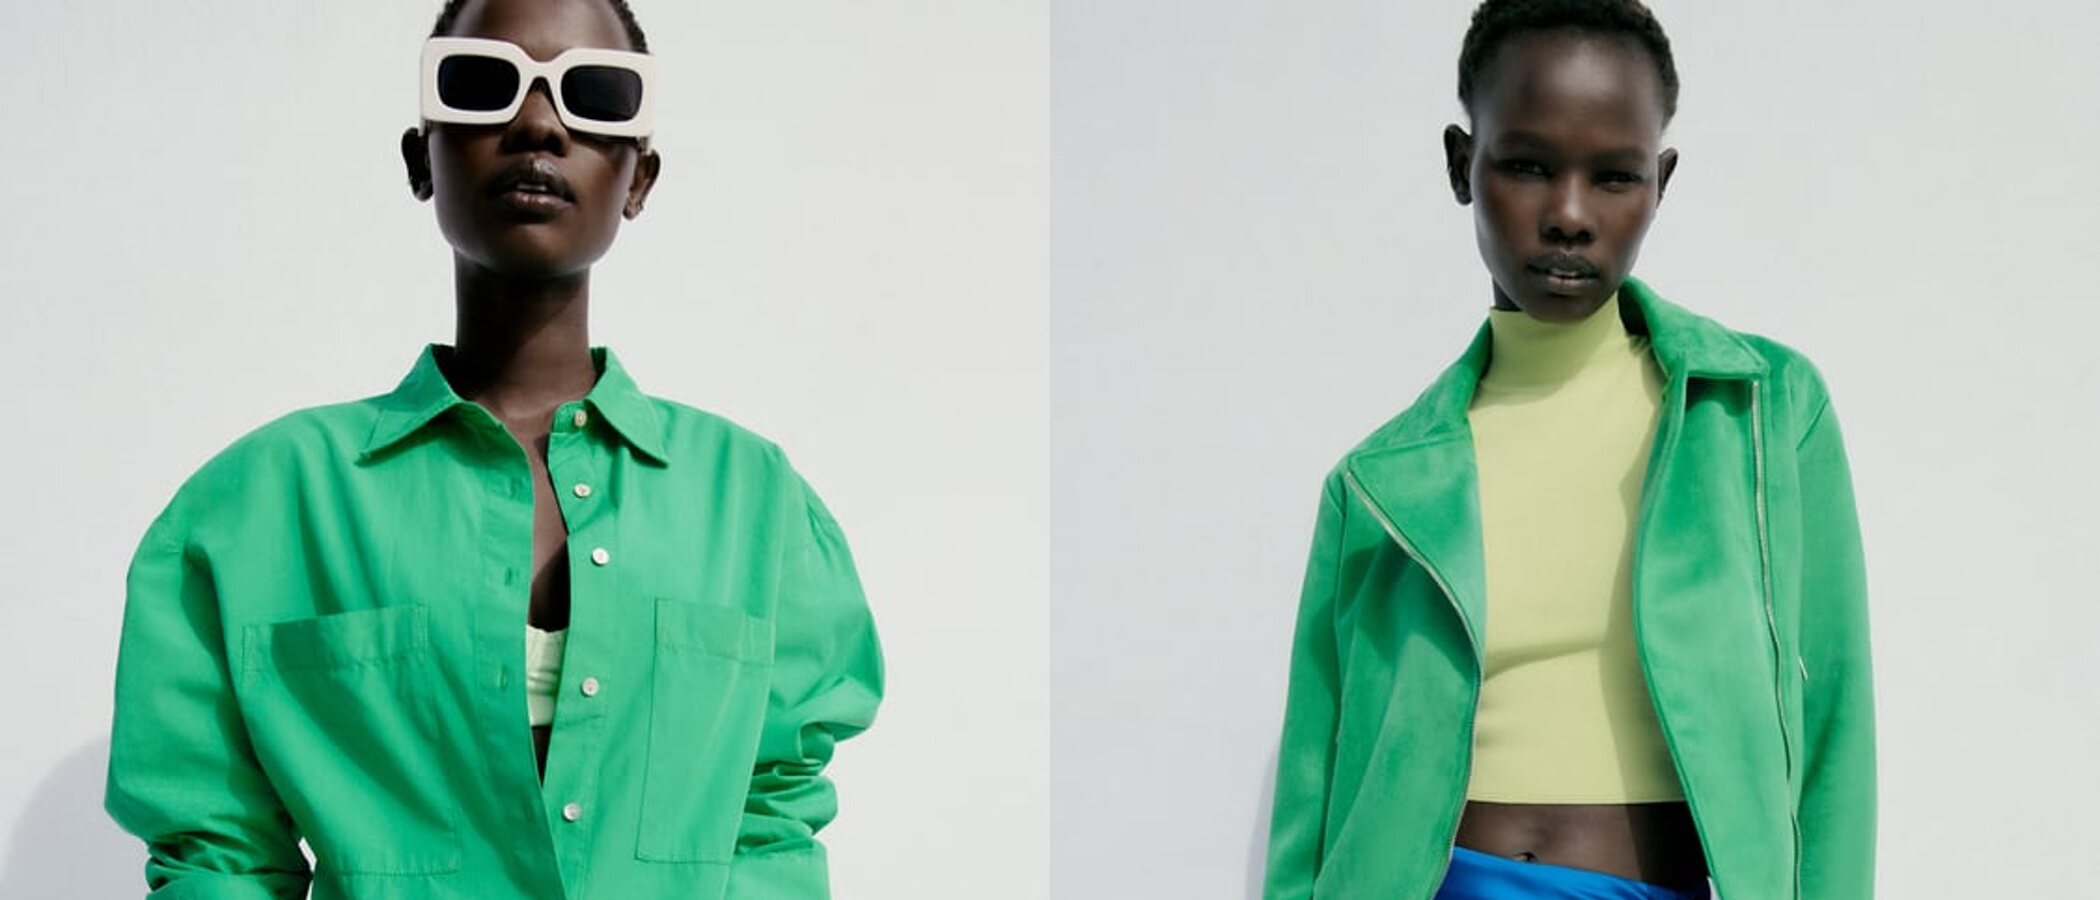 Si tú también estás obsesionada con el verde Bottega, Zara tiene nuevas prendas en su tienda que te interesan